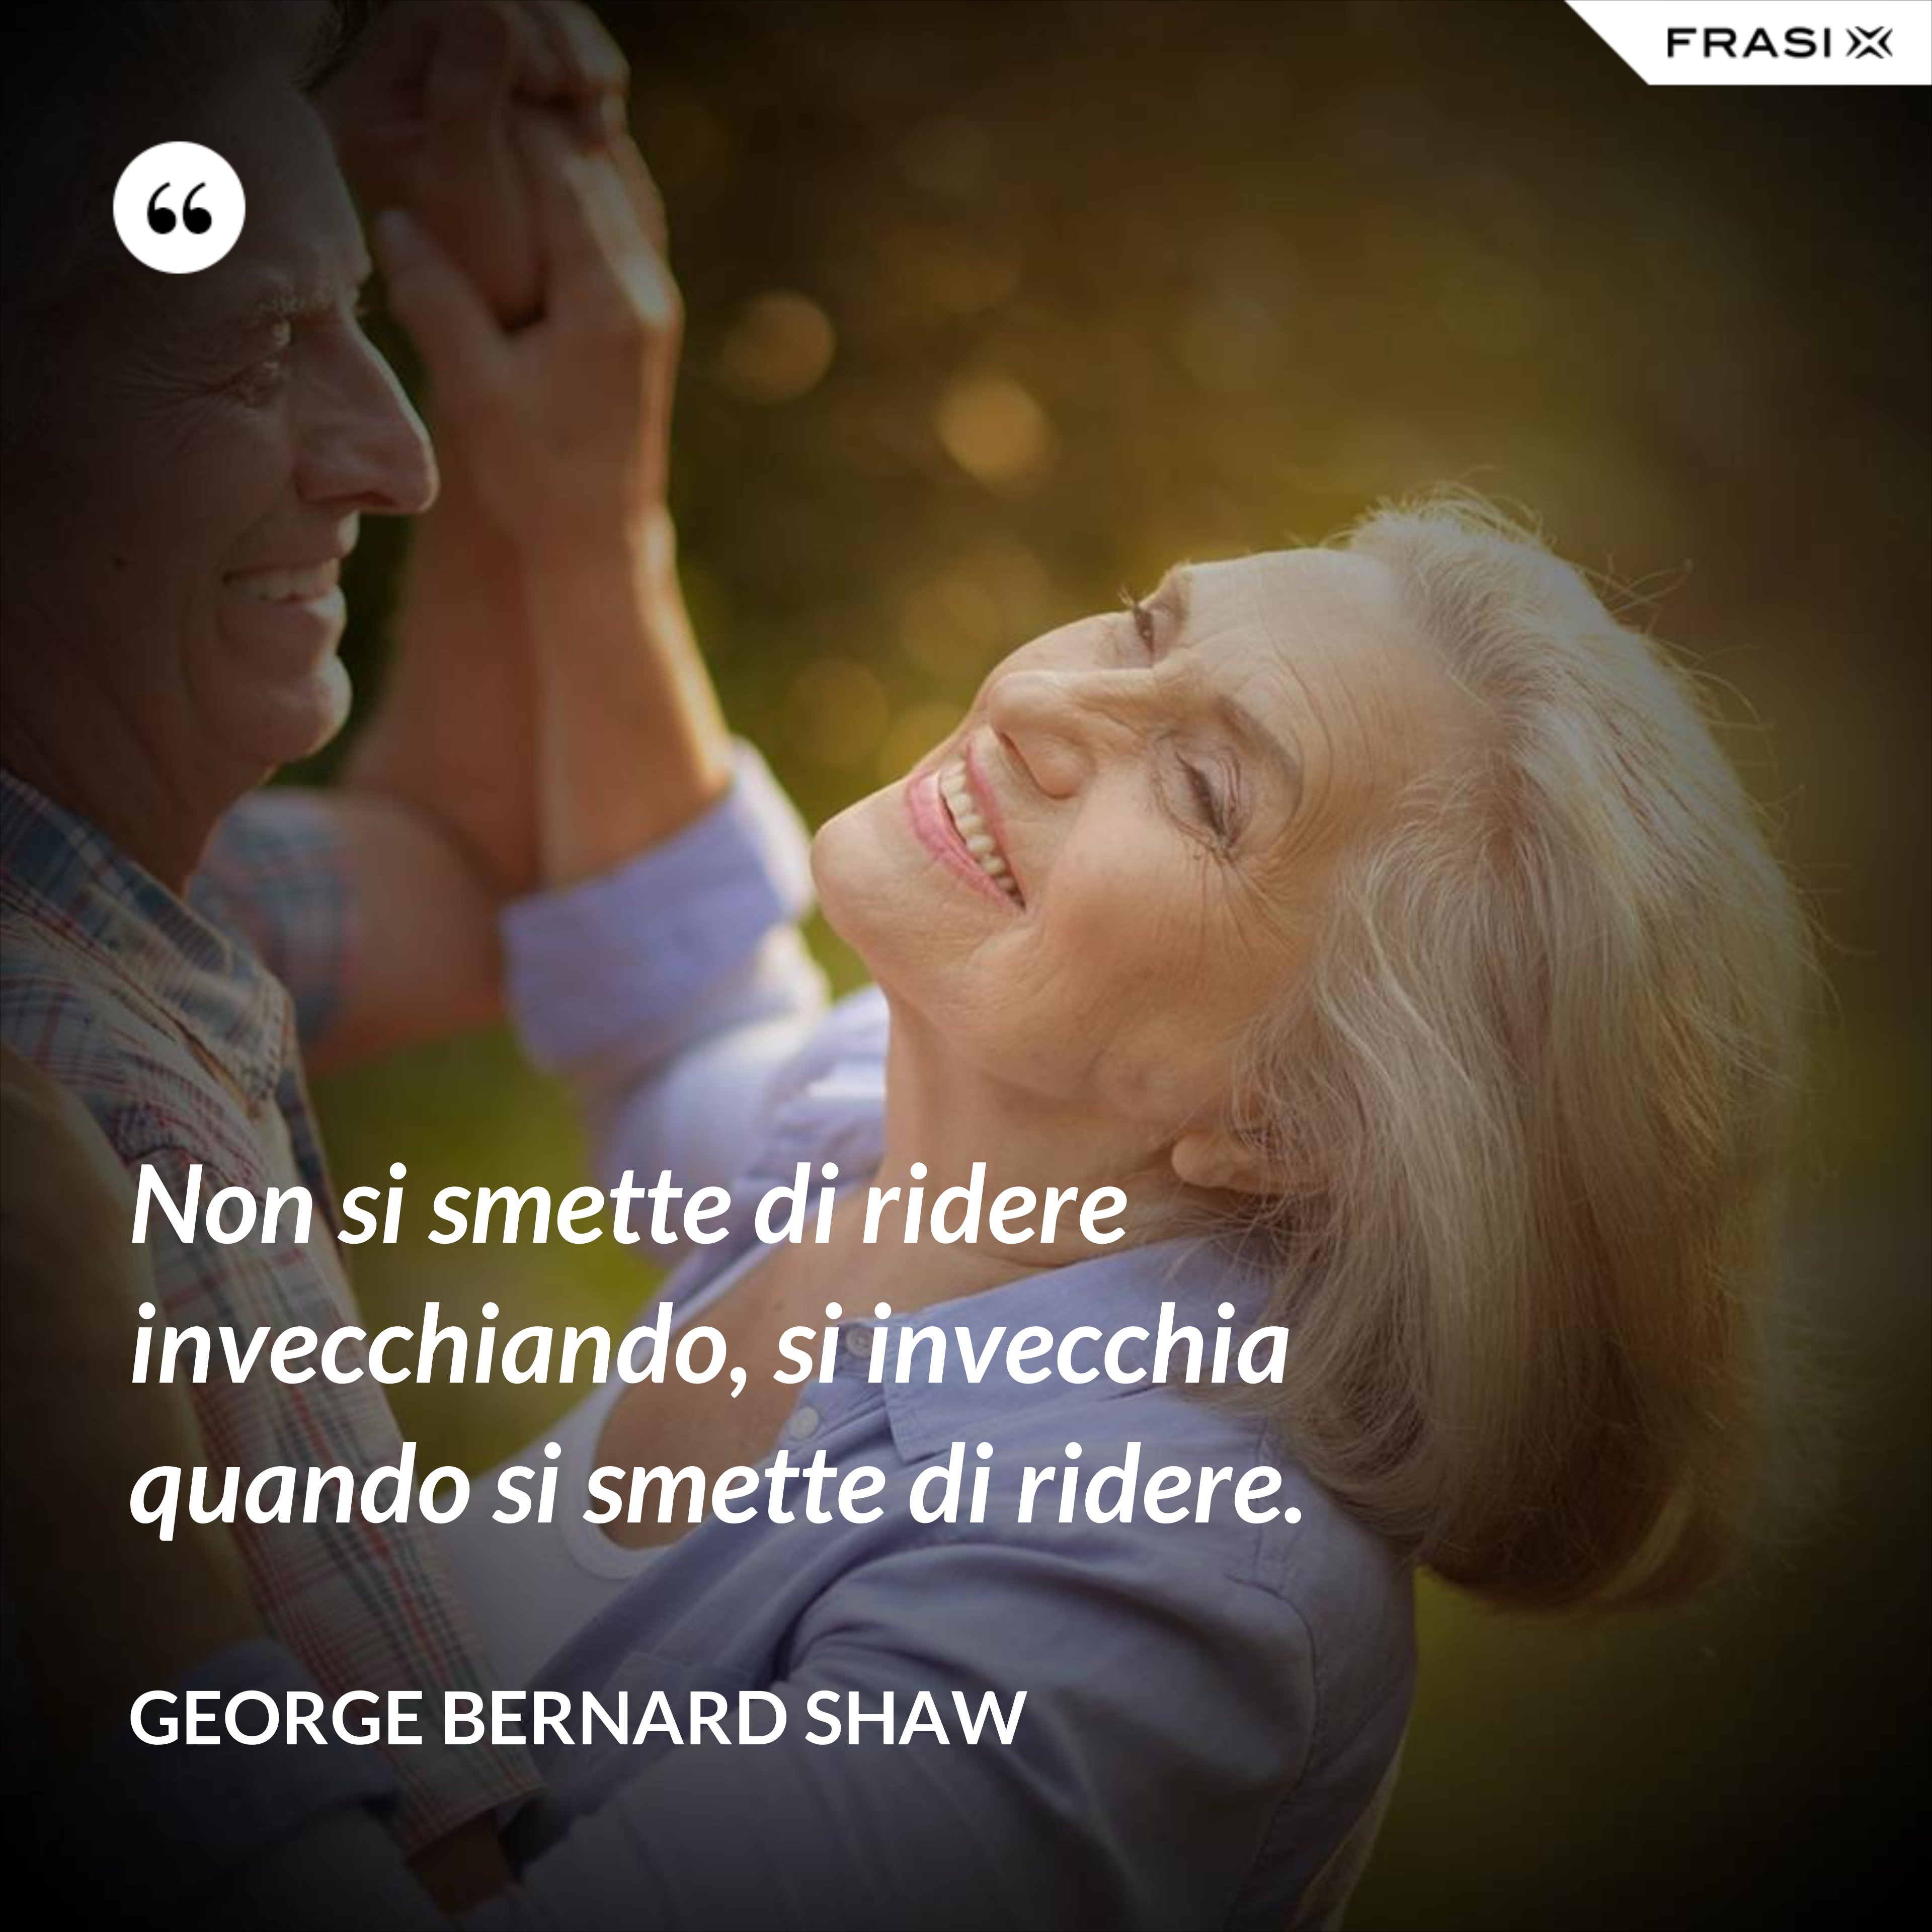 Non si smette di ridere invecchiando, si invecchia quando si smette di ridere. - George Bernard Shaw